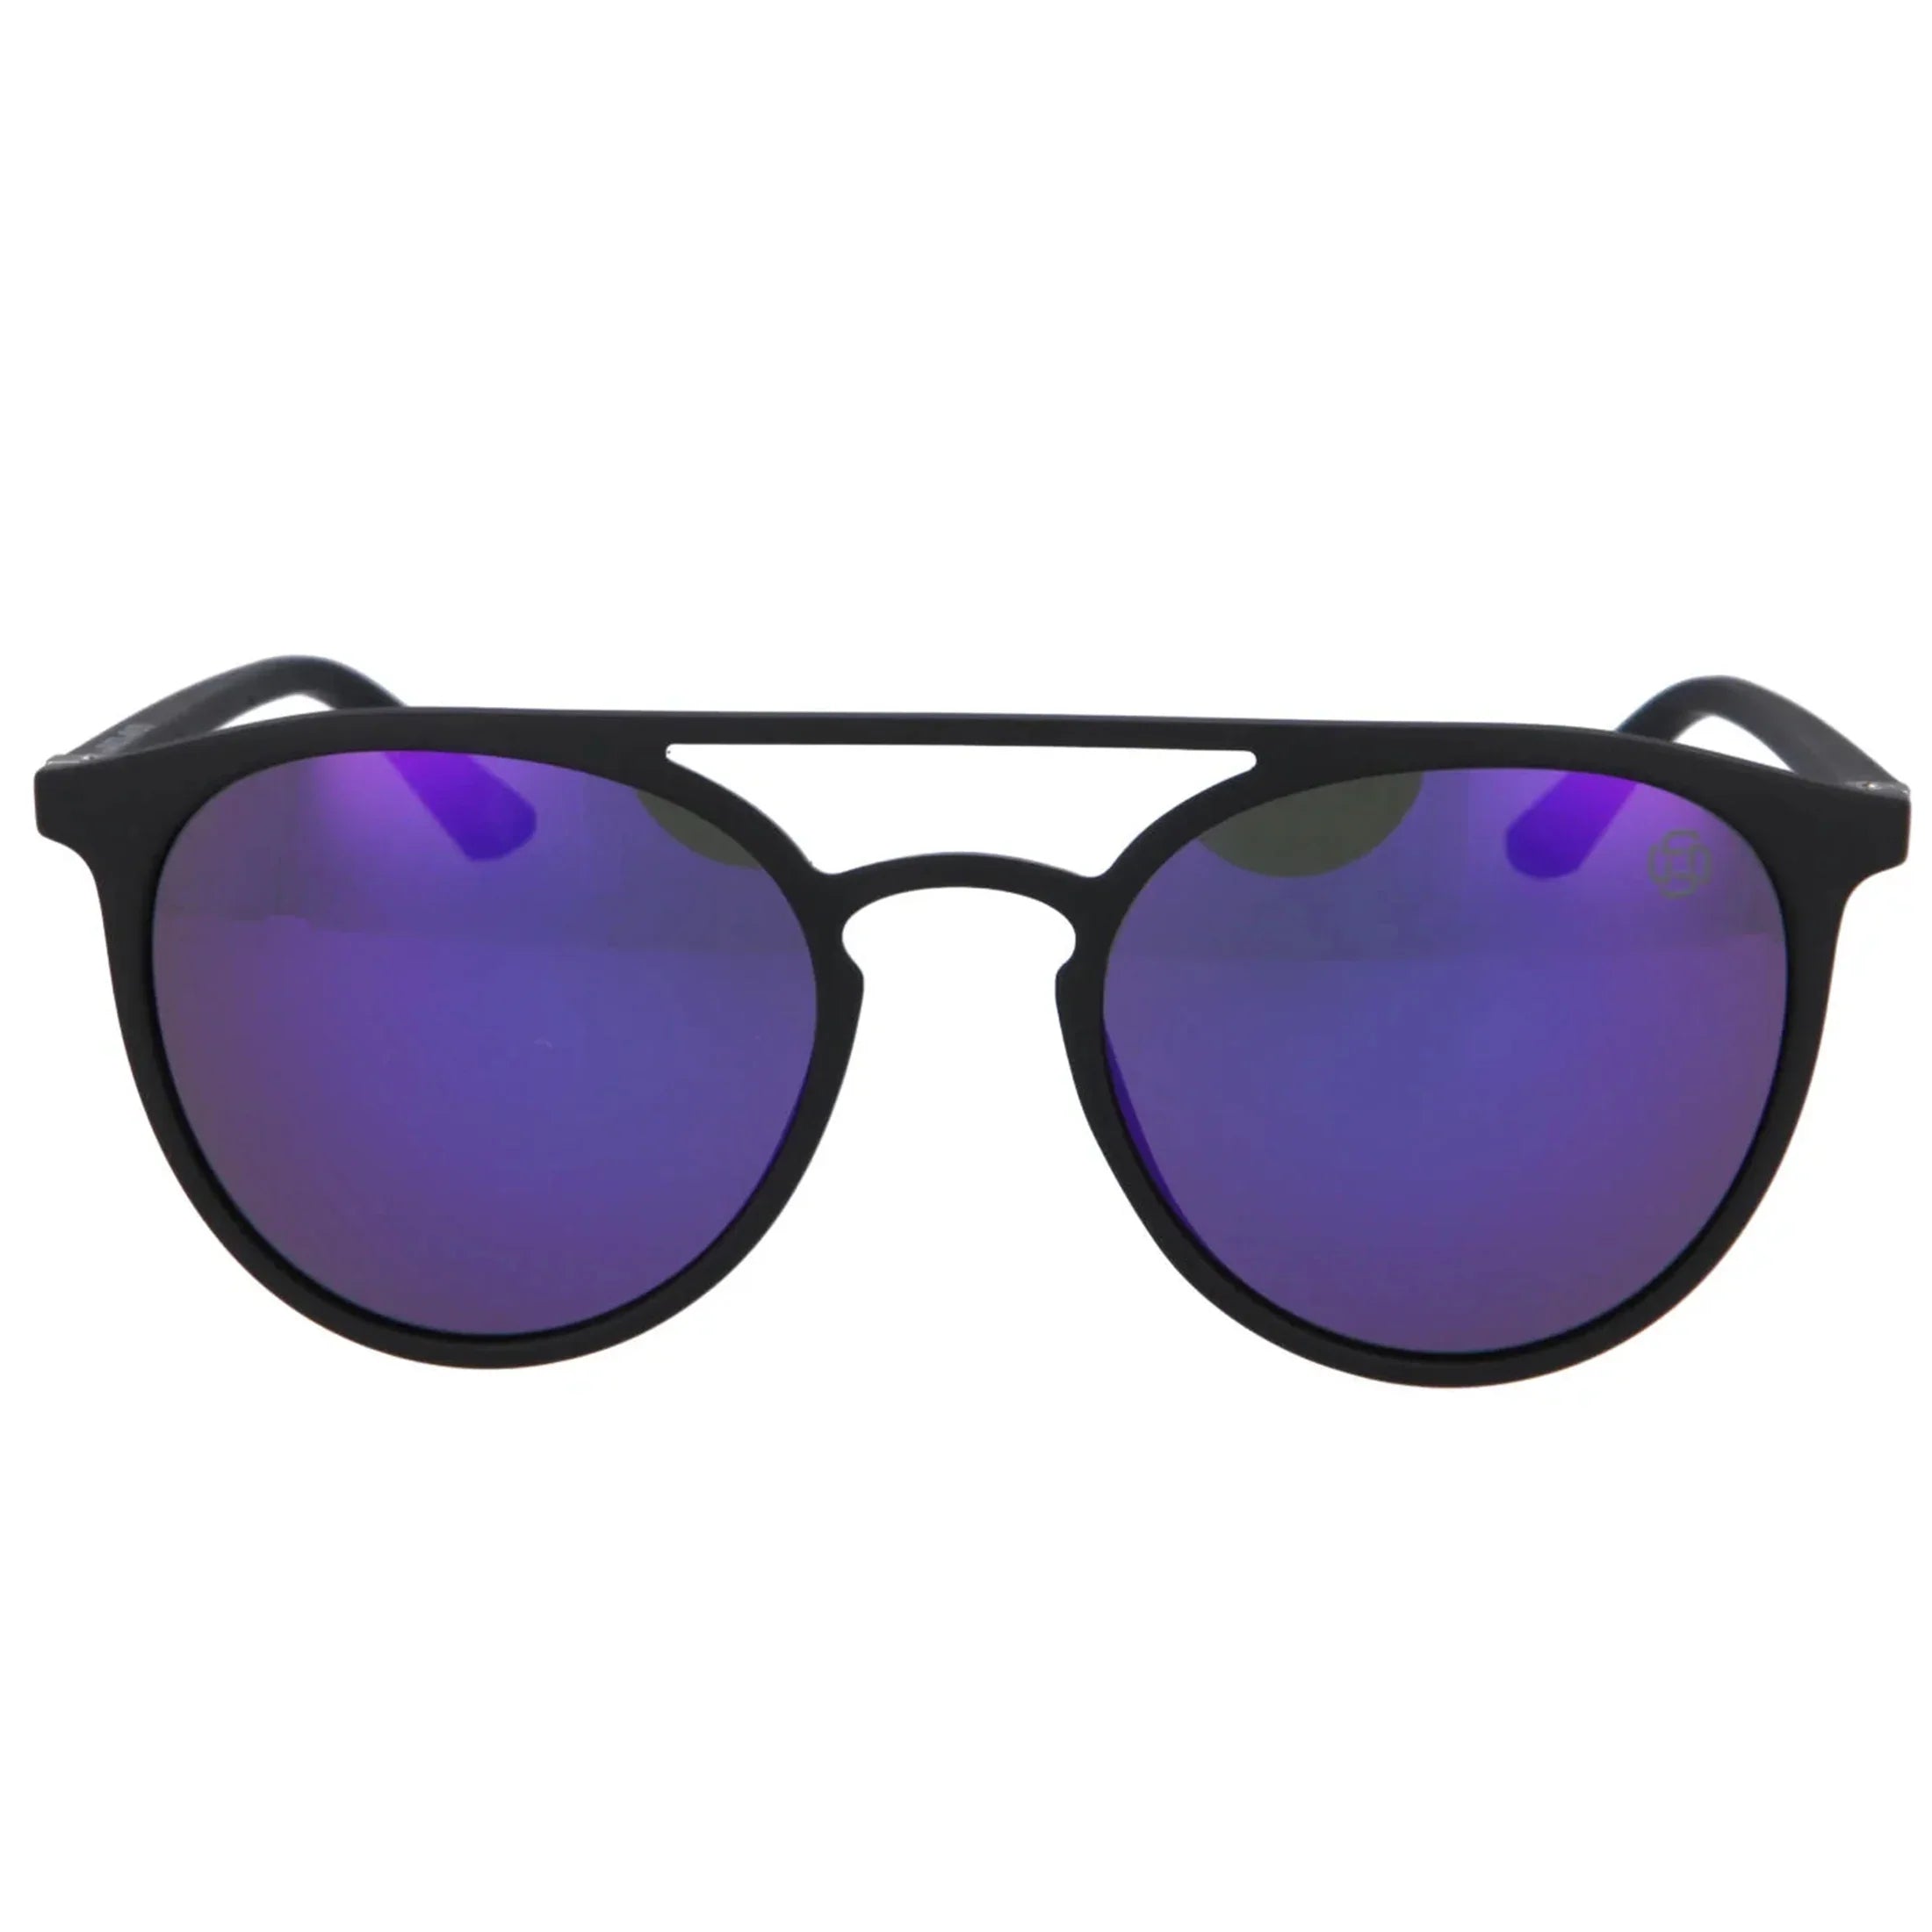 J. Athletics Monti Sunglasses 52-20 - Black/Purple